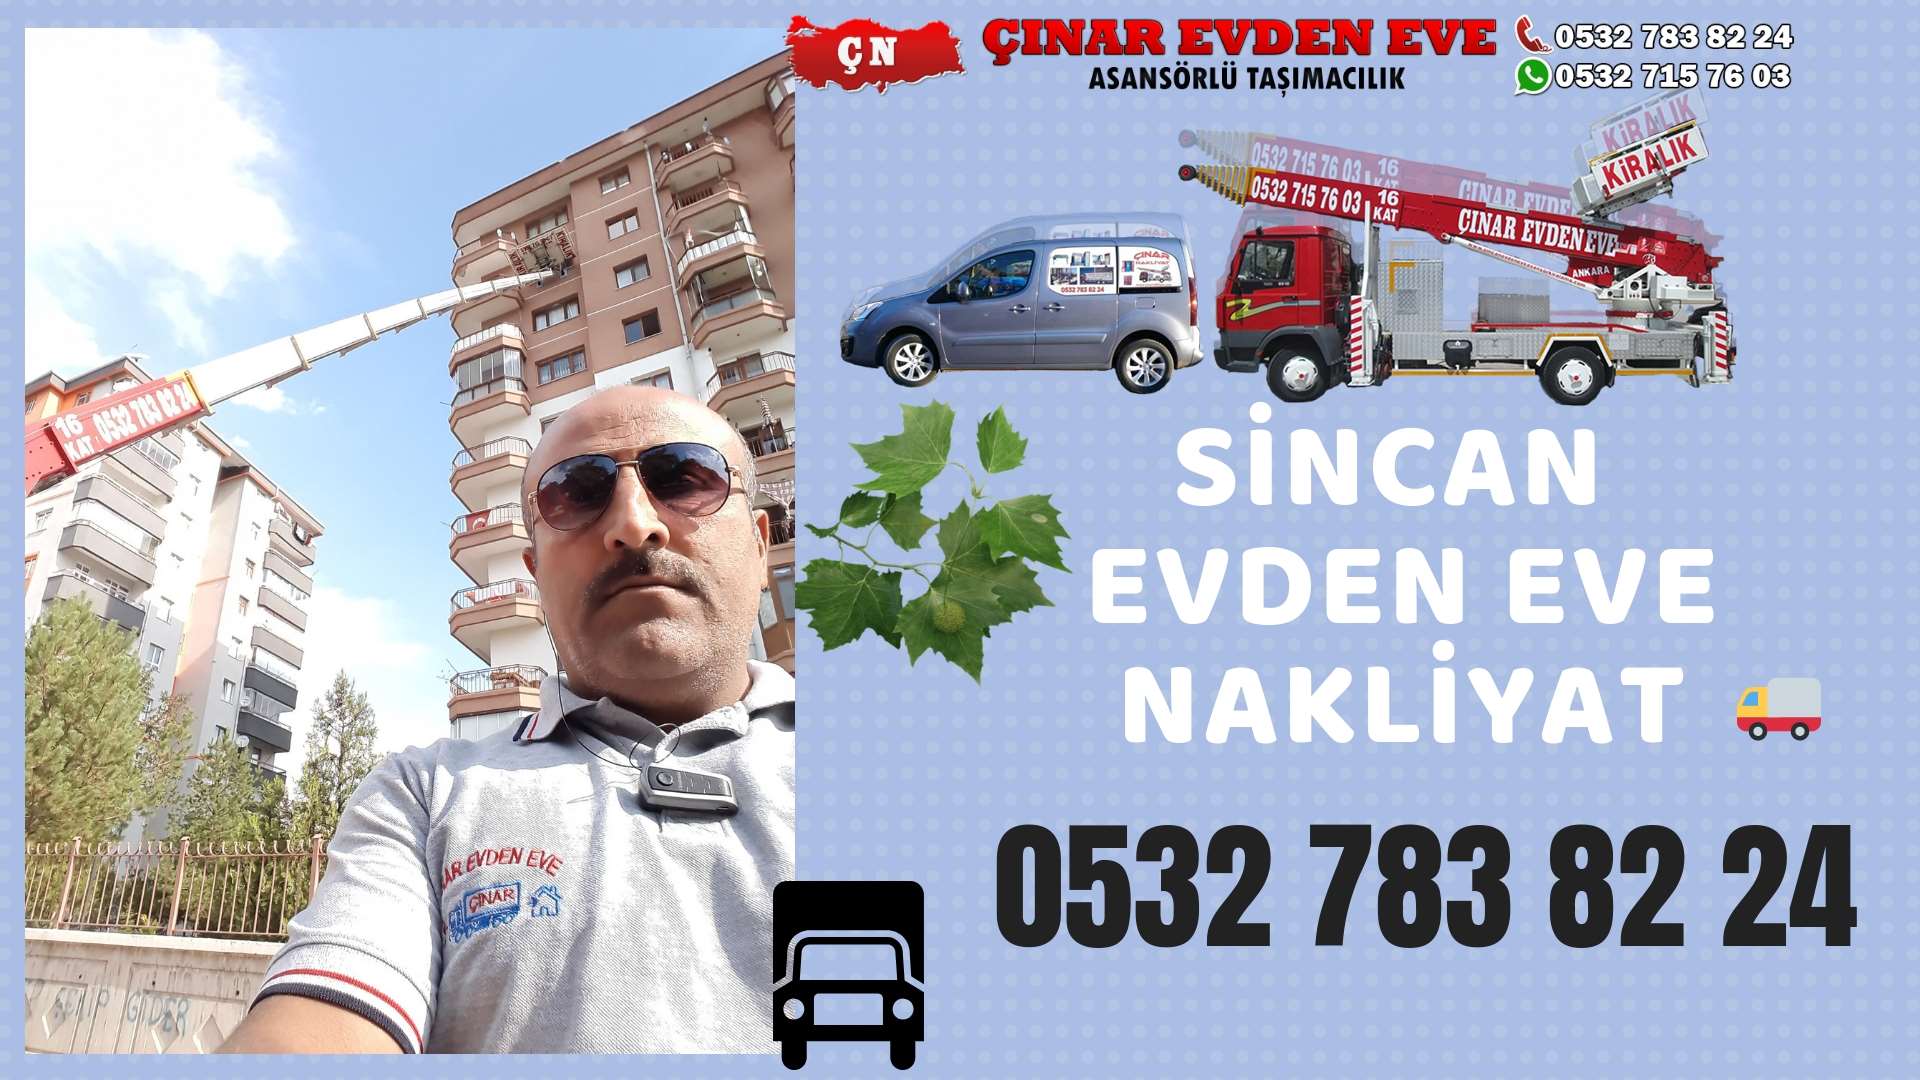 Ankara Sincan Fatih Evden Eve Nakliyat, Asansörlü Taşımacılık, Ofis / İş Yeri Taşıma 0532 715 76 03